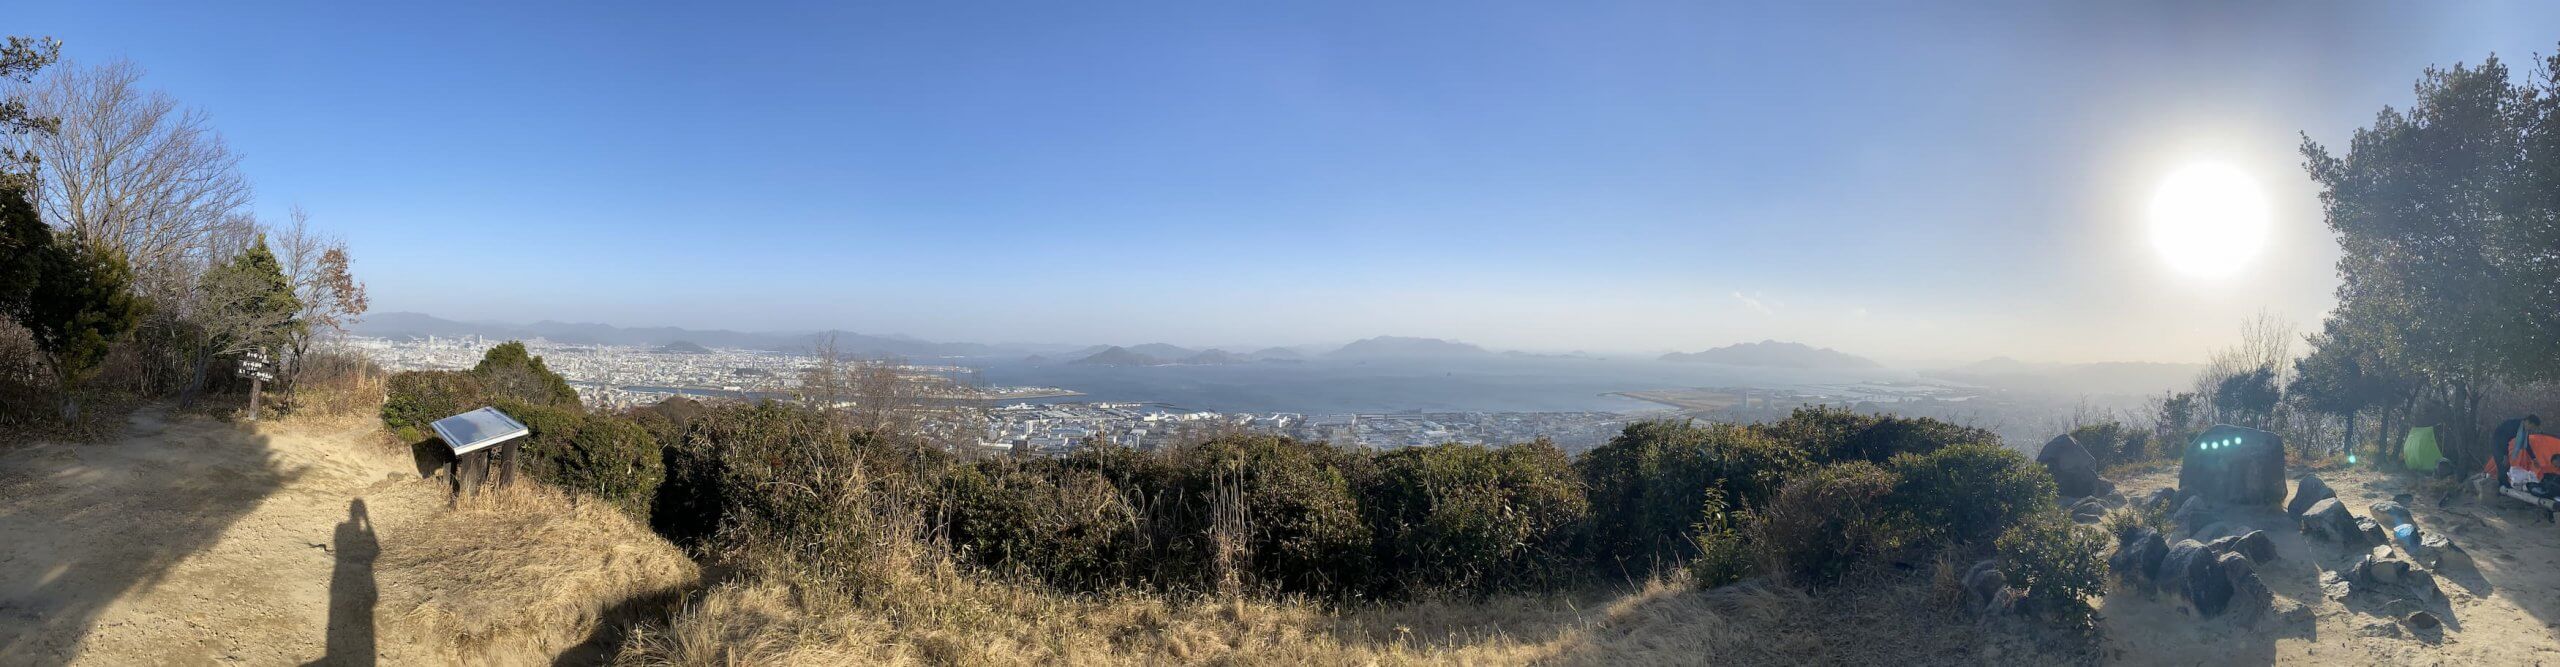 鈴ヶ峰山頂からのパノラマ写真